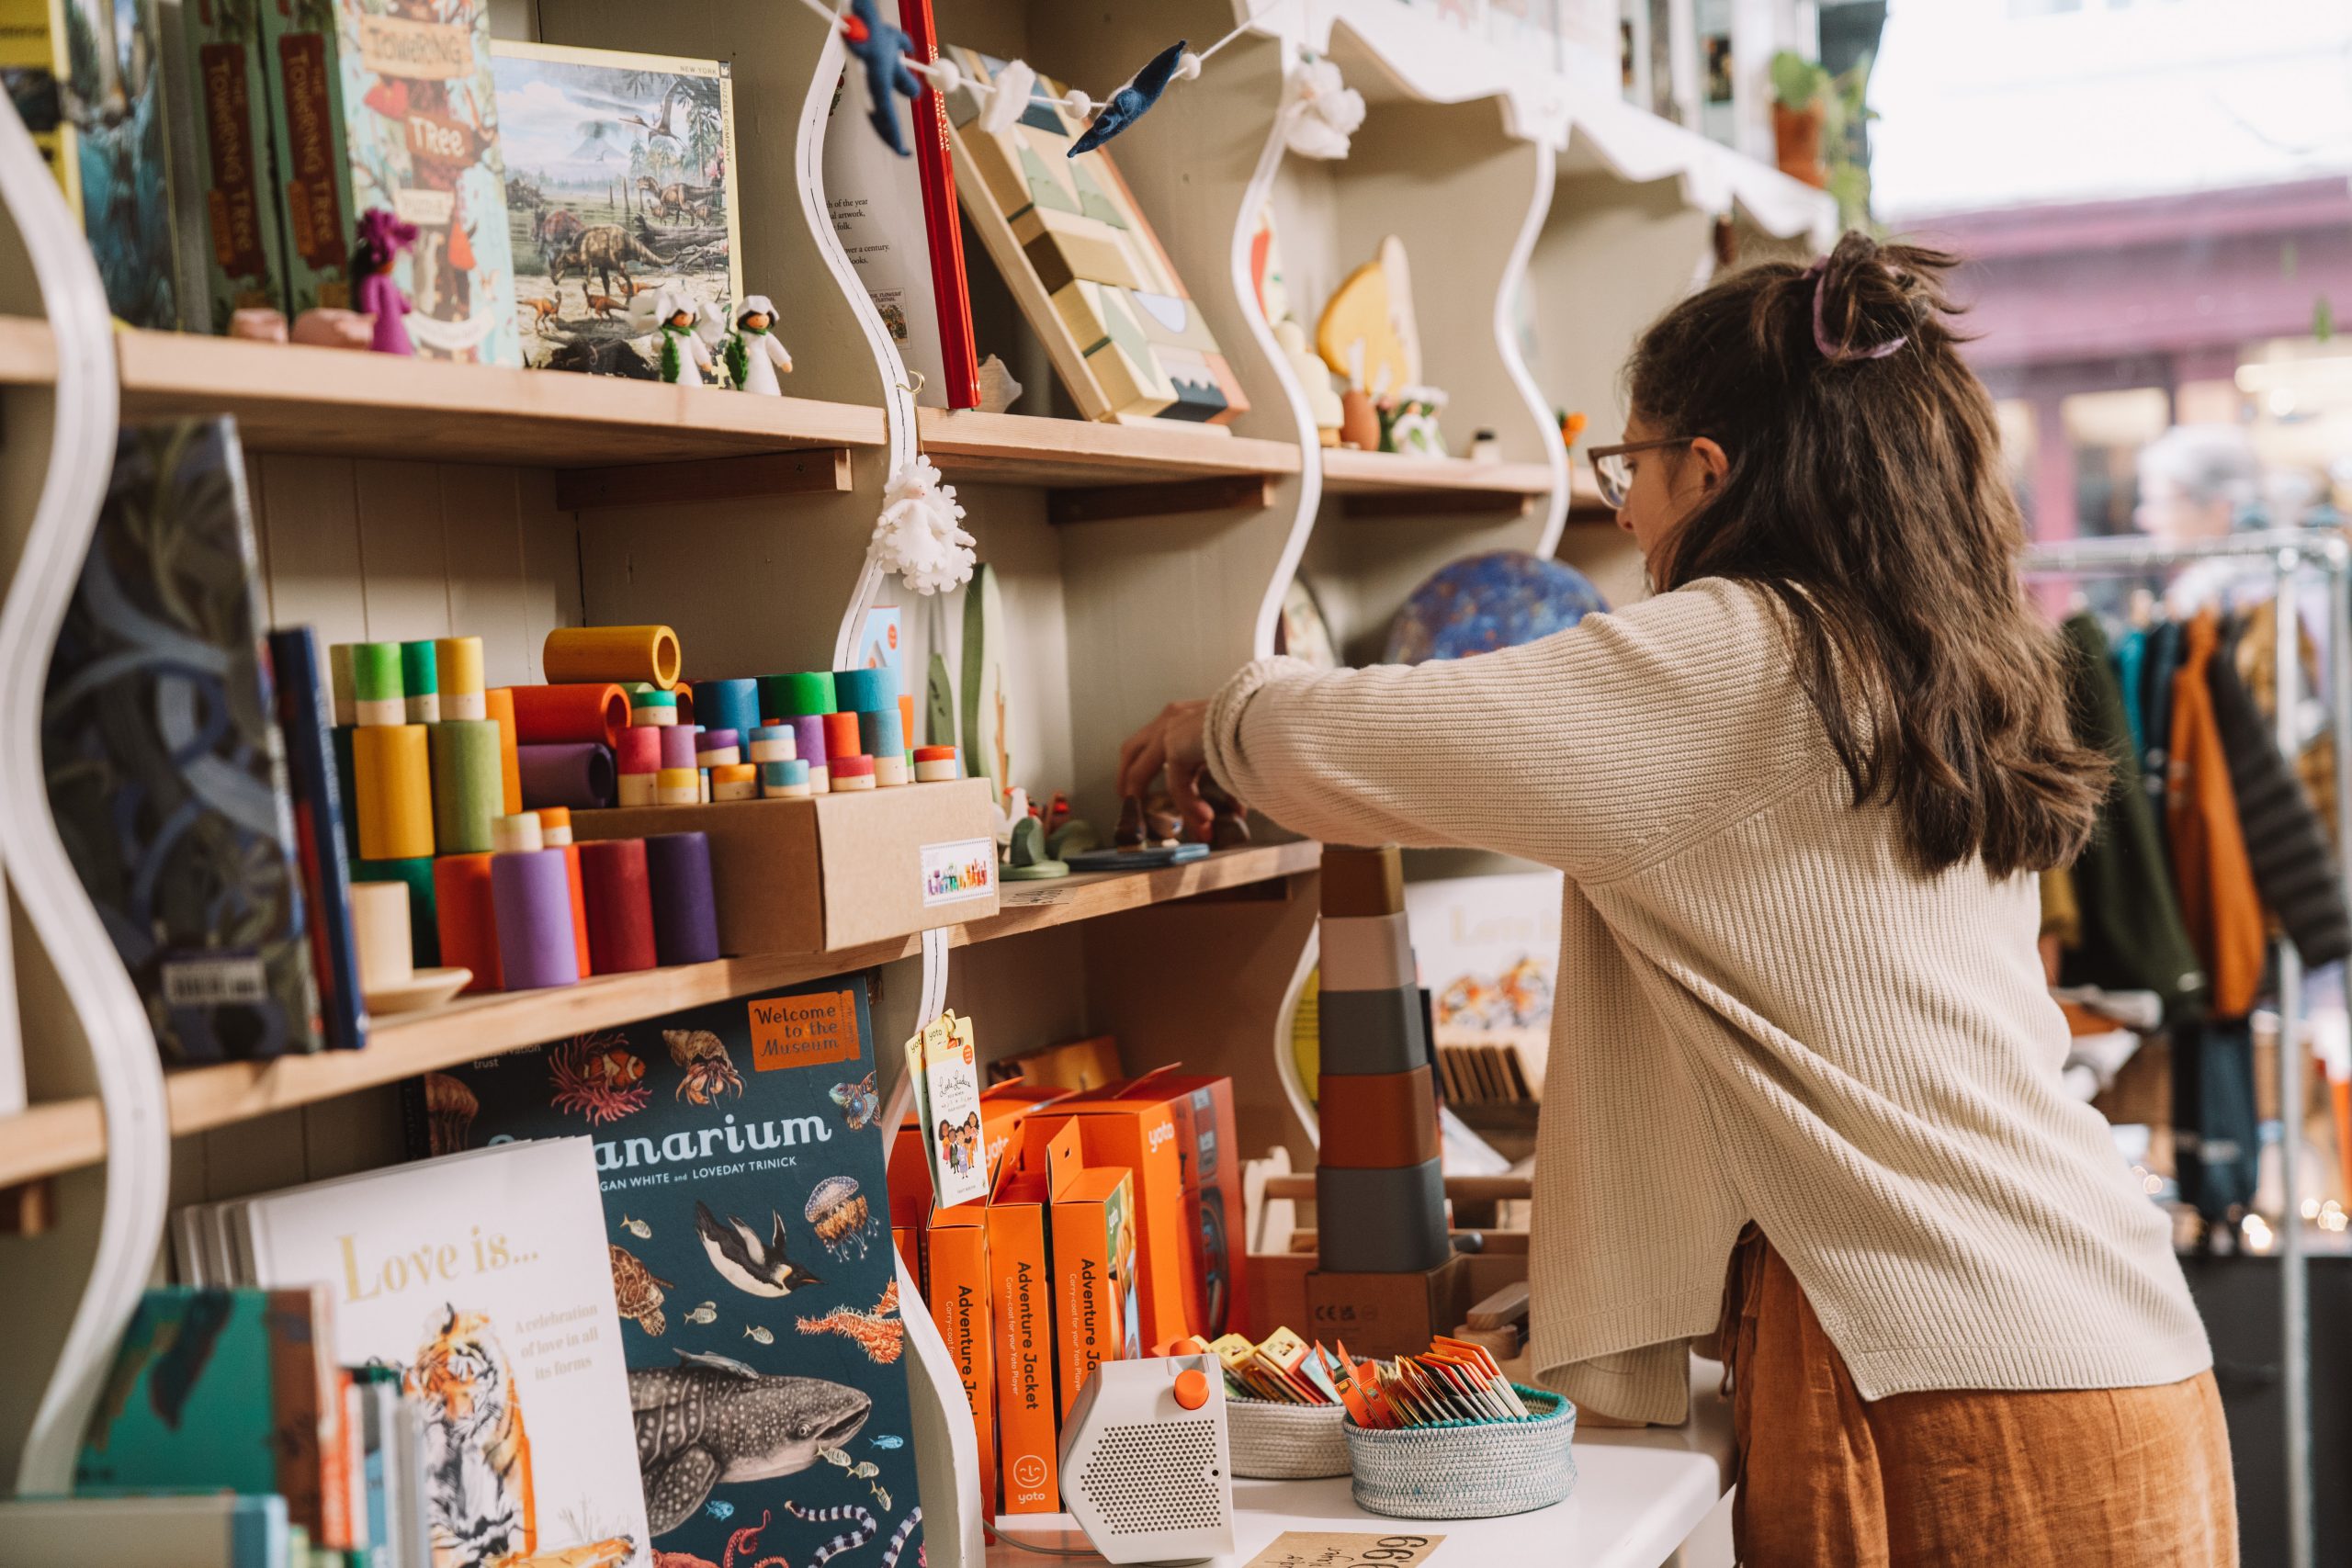 Owner of Small-Folk, Anna Liddle inside her indie Devon children's store